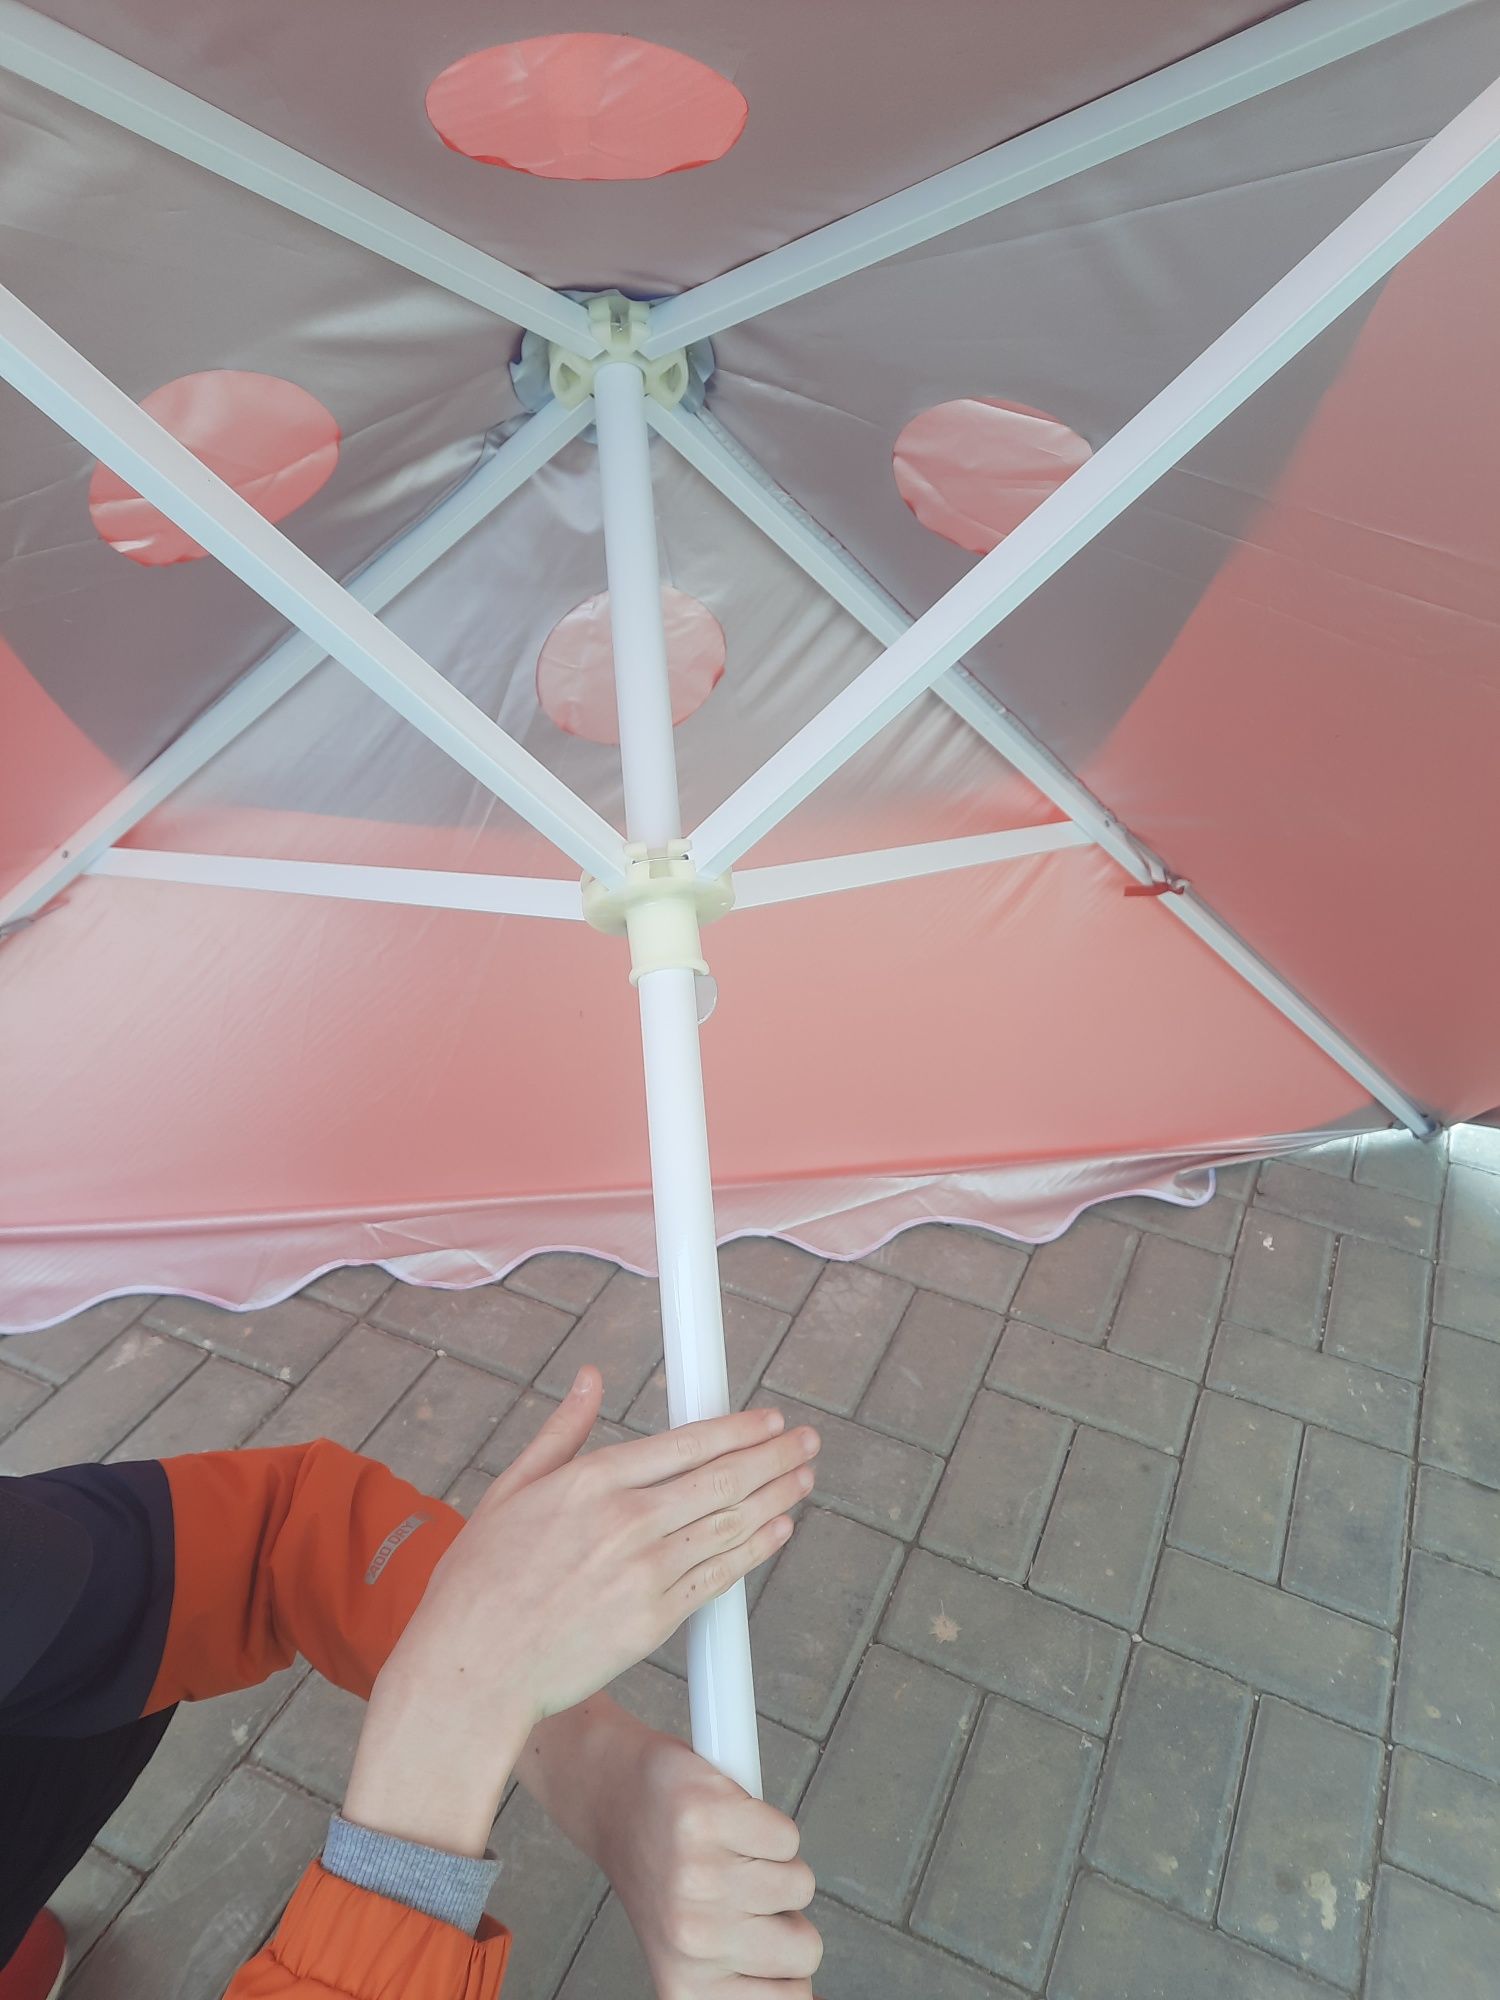 Розмір 4×3м, торговый зонт,  торгова парасоля,  Садовый зонт